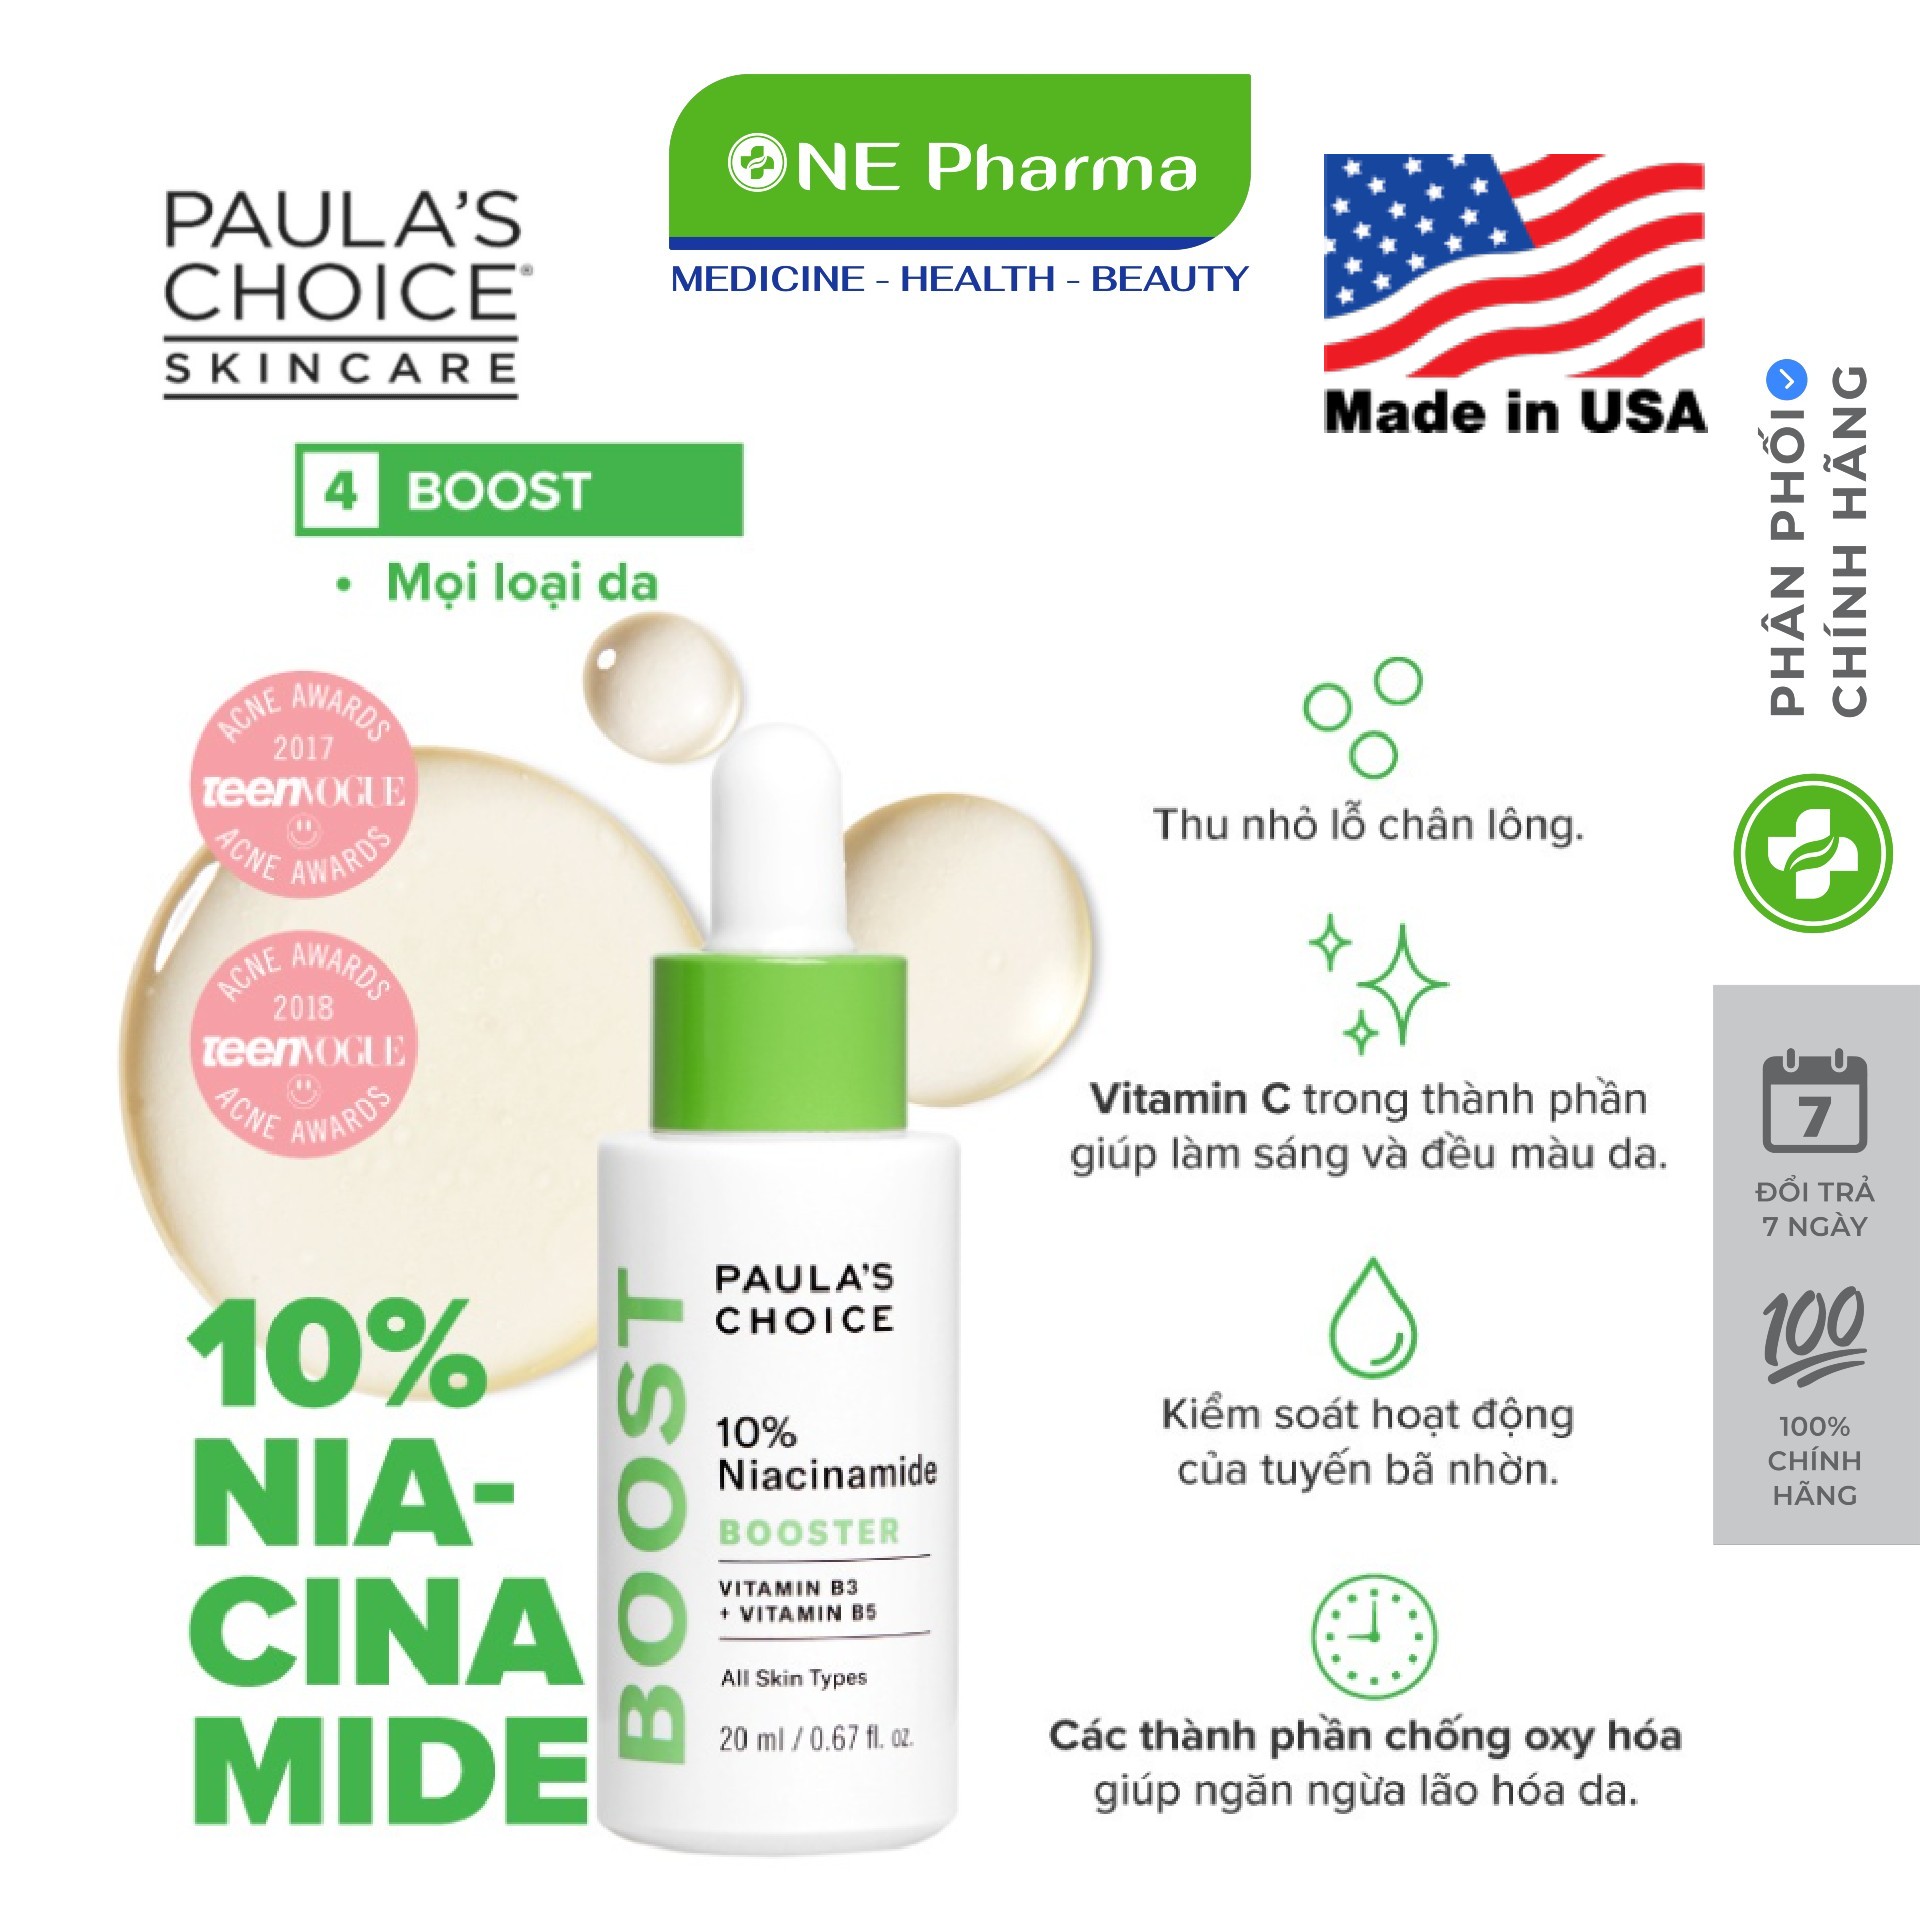 Tinh Chất Paulas Choice Resist 10% Niacinamide Booster ( vitamin B3) se khít lỗ chân lông 20ml